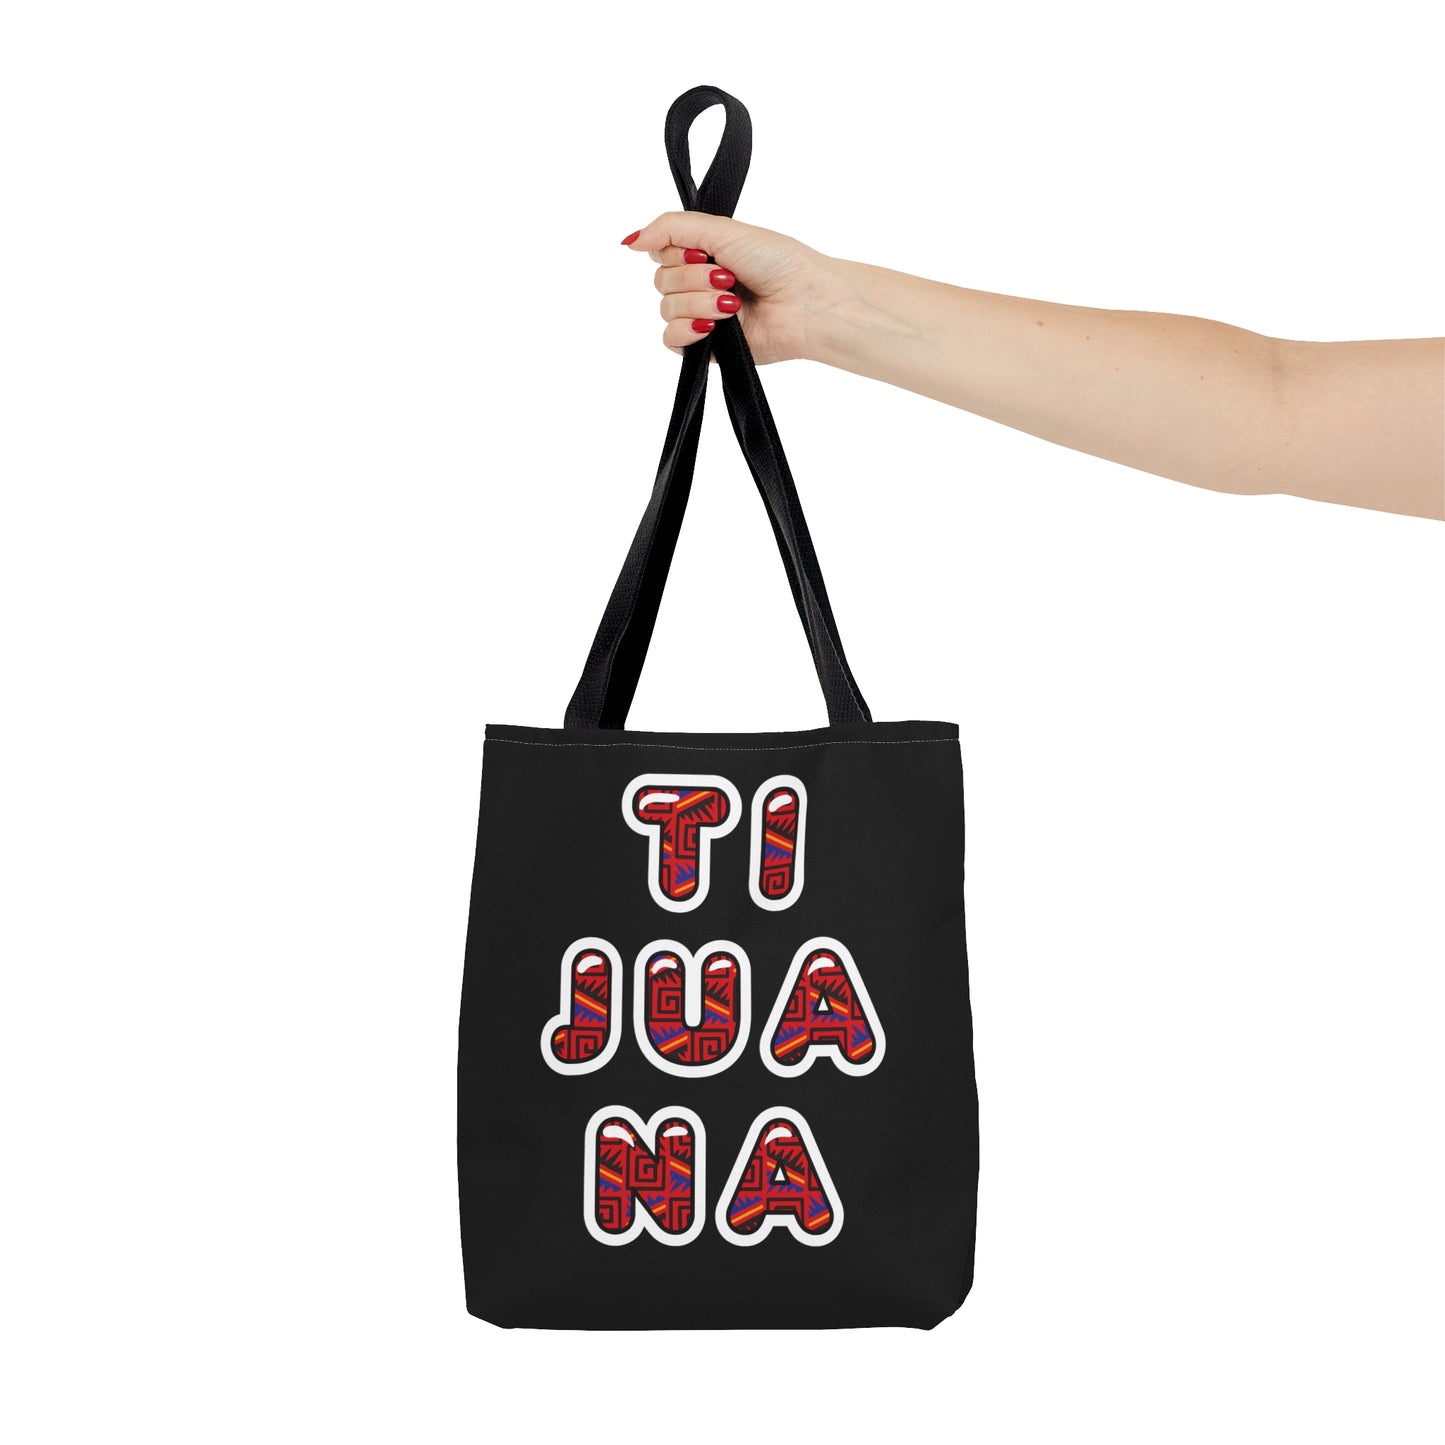 Tijuana Tote Bag